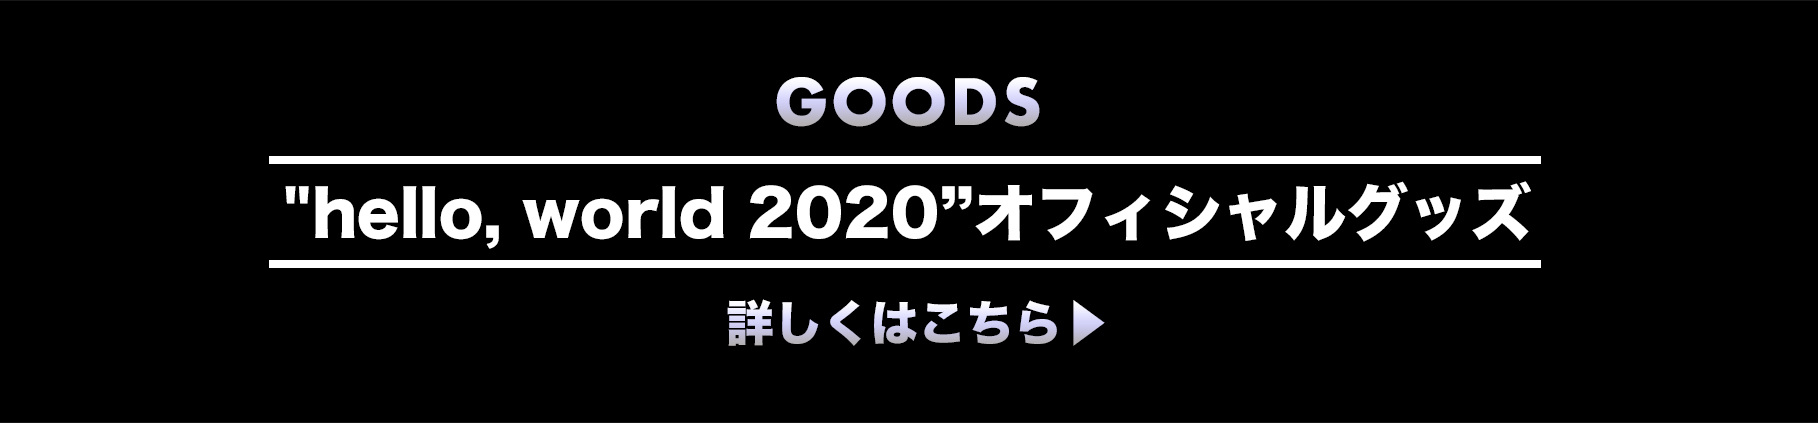 hello, world 2020”オフィシャルグッズ